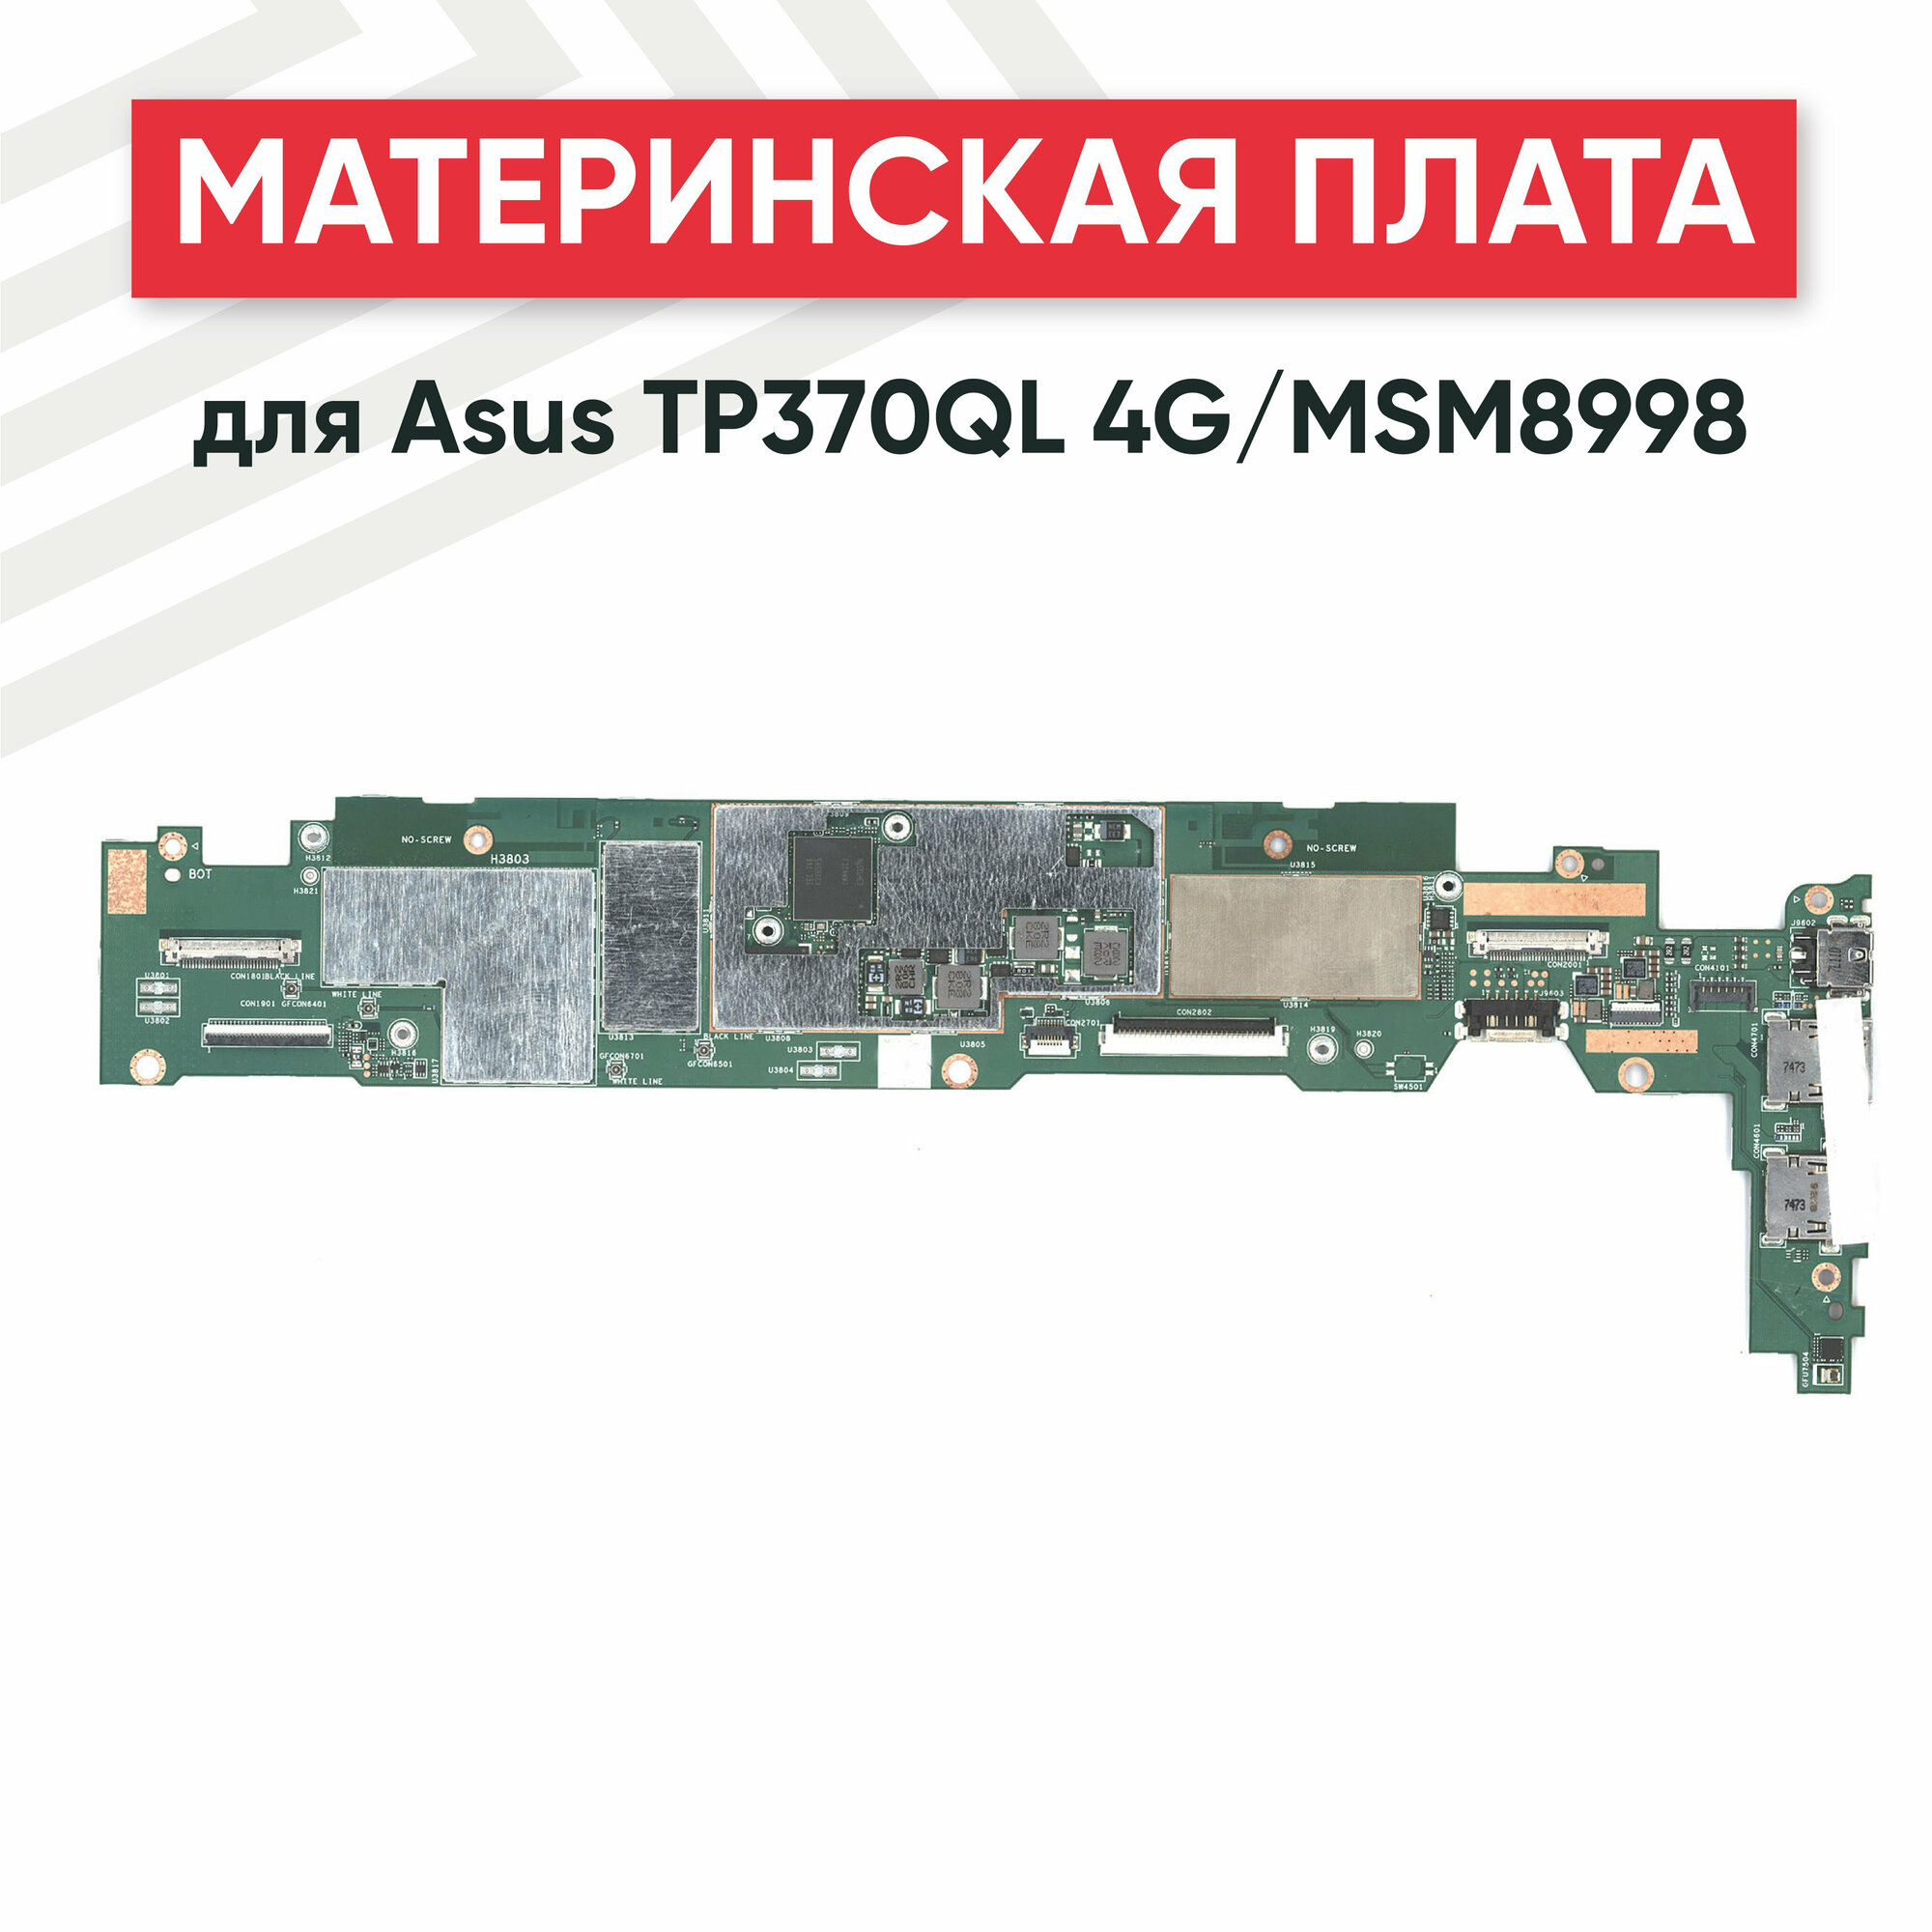 Материнская плата для Asus TP370QL 4G/MSM8998